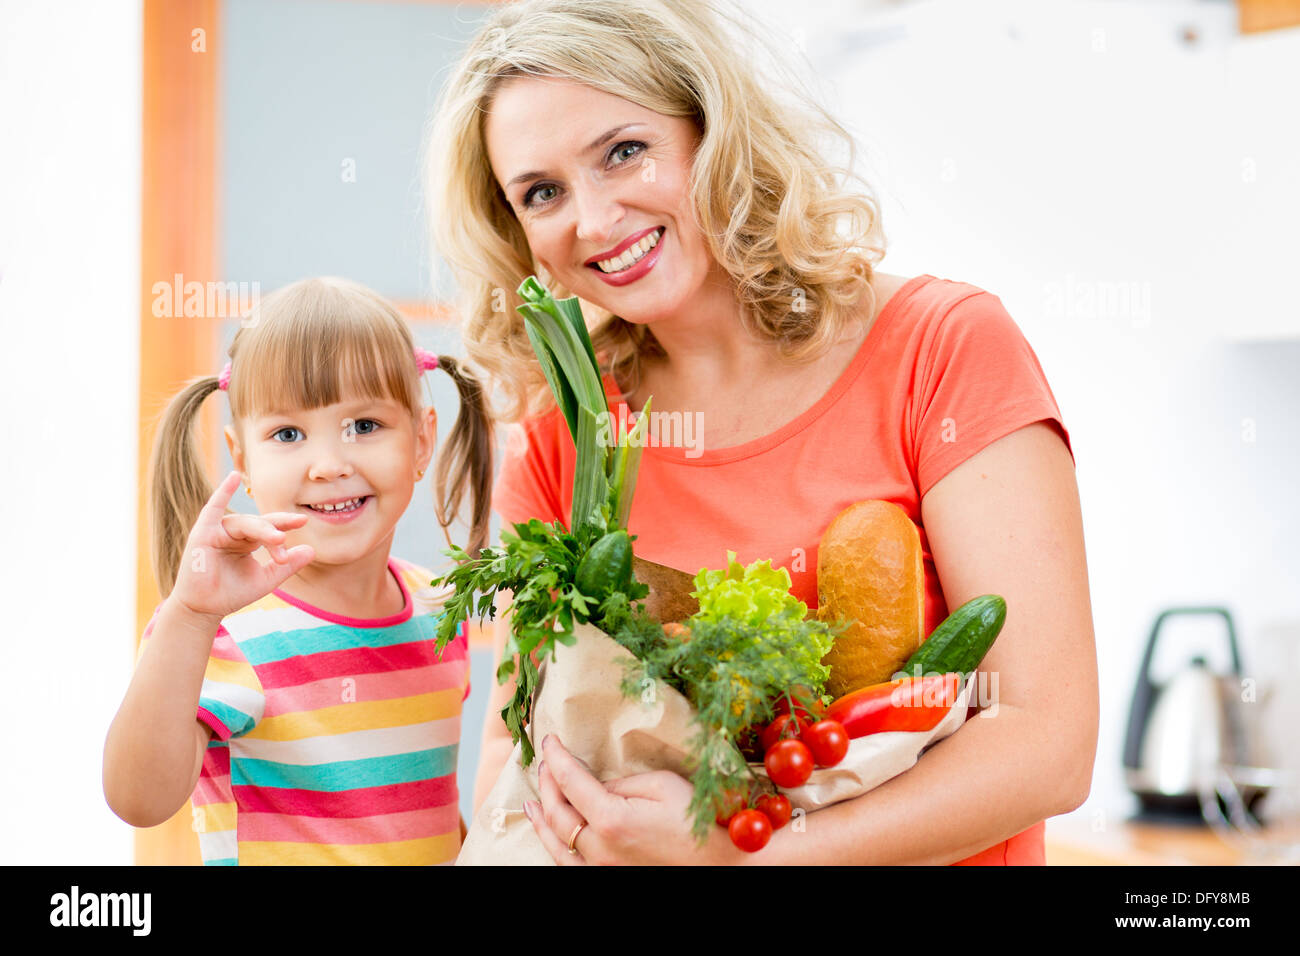 Mutter und Kind hält eine Einkaufstüte voll mit Gemüse in der Küche Stockfoto